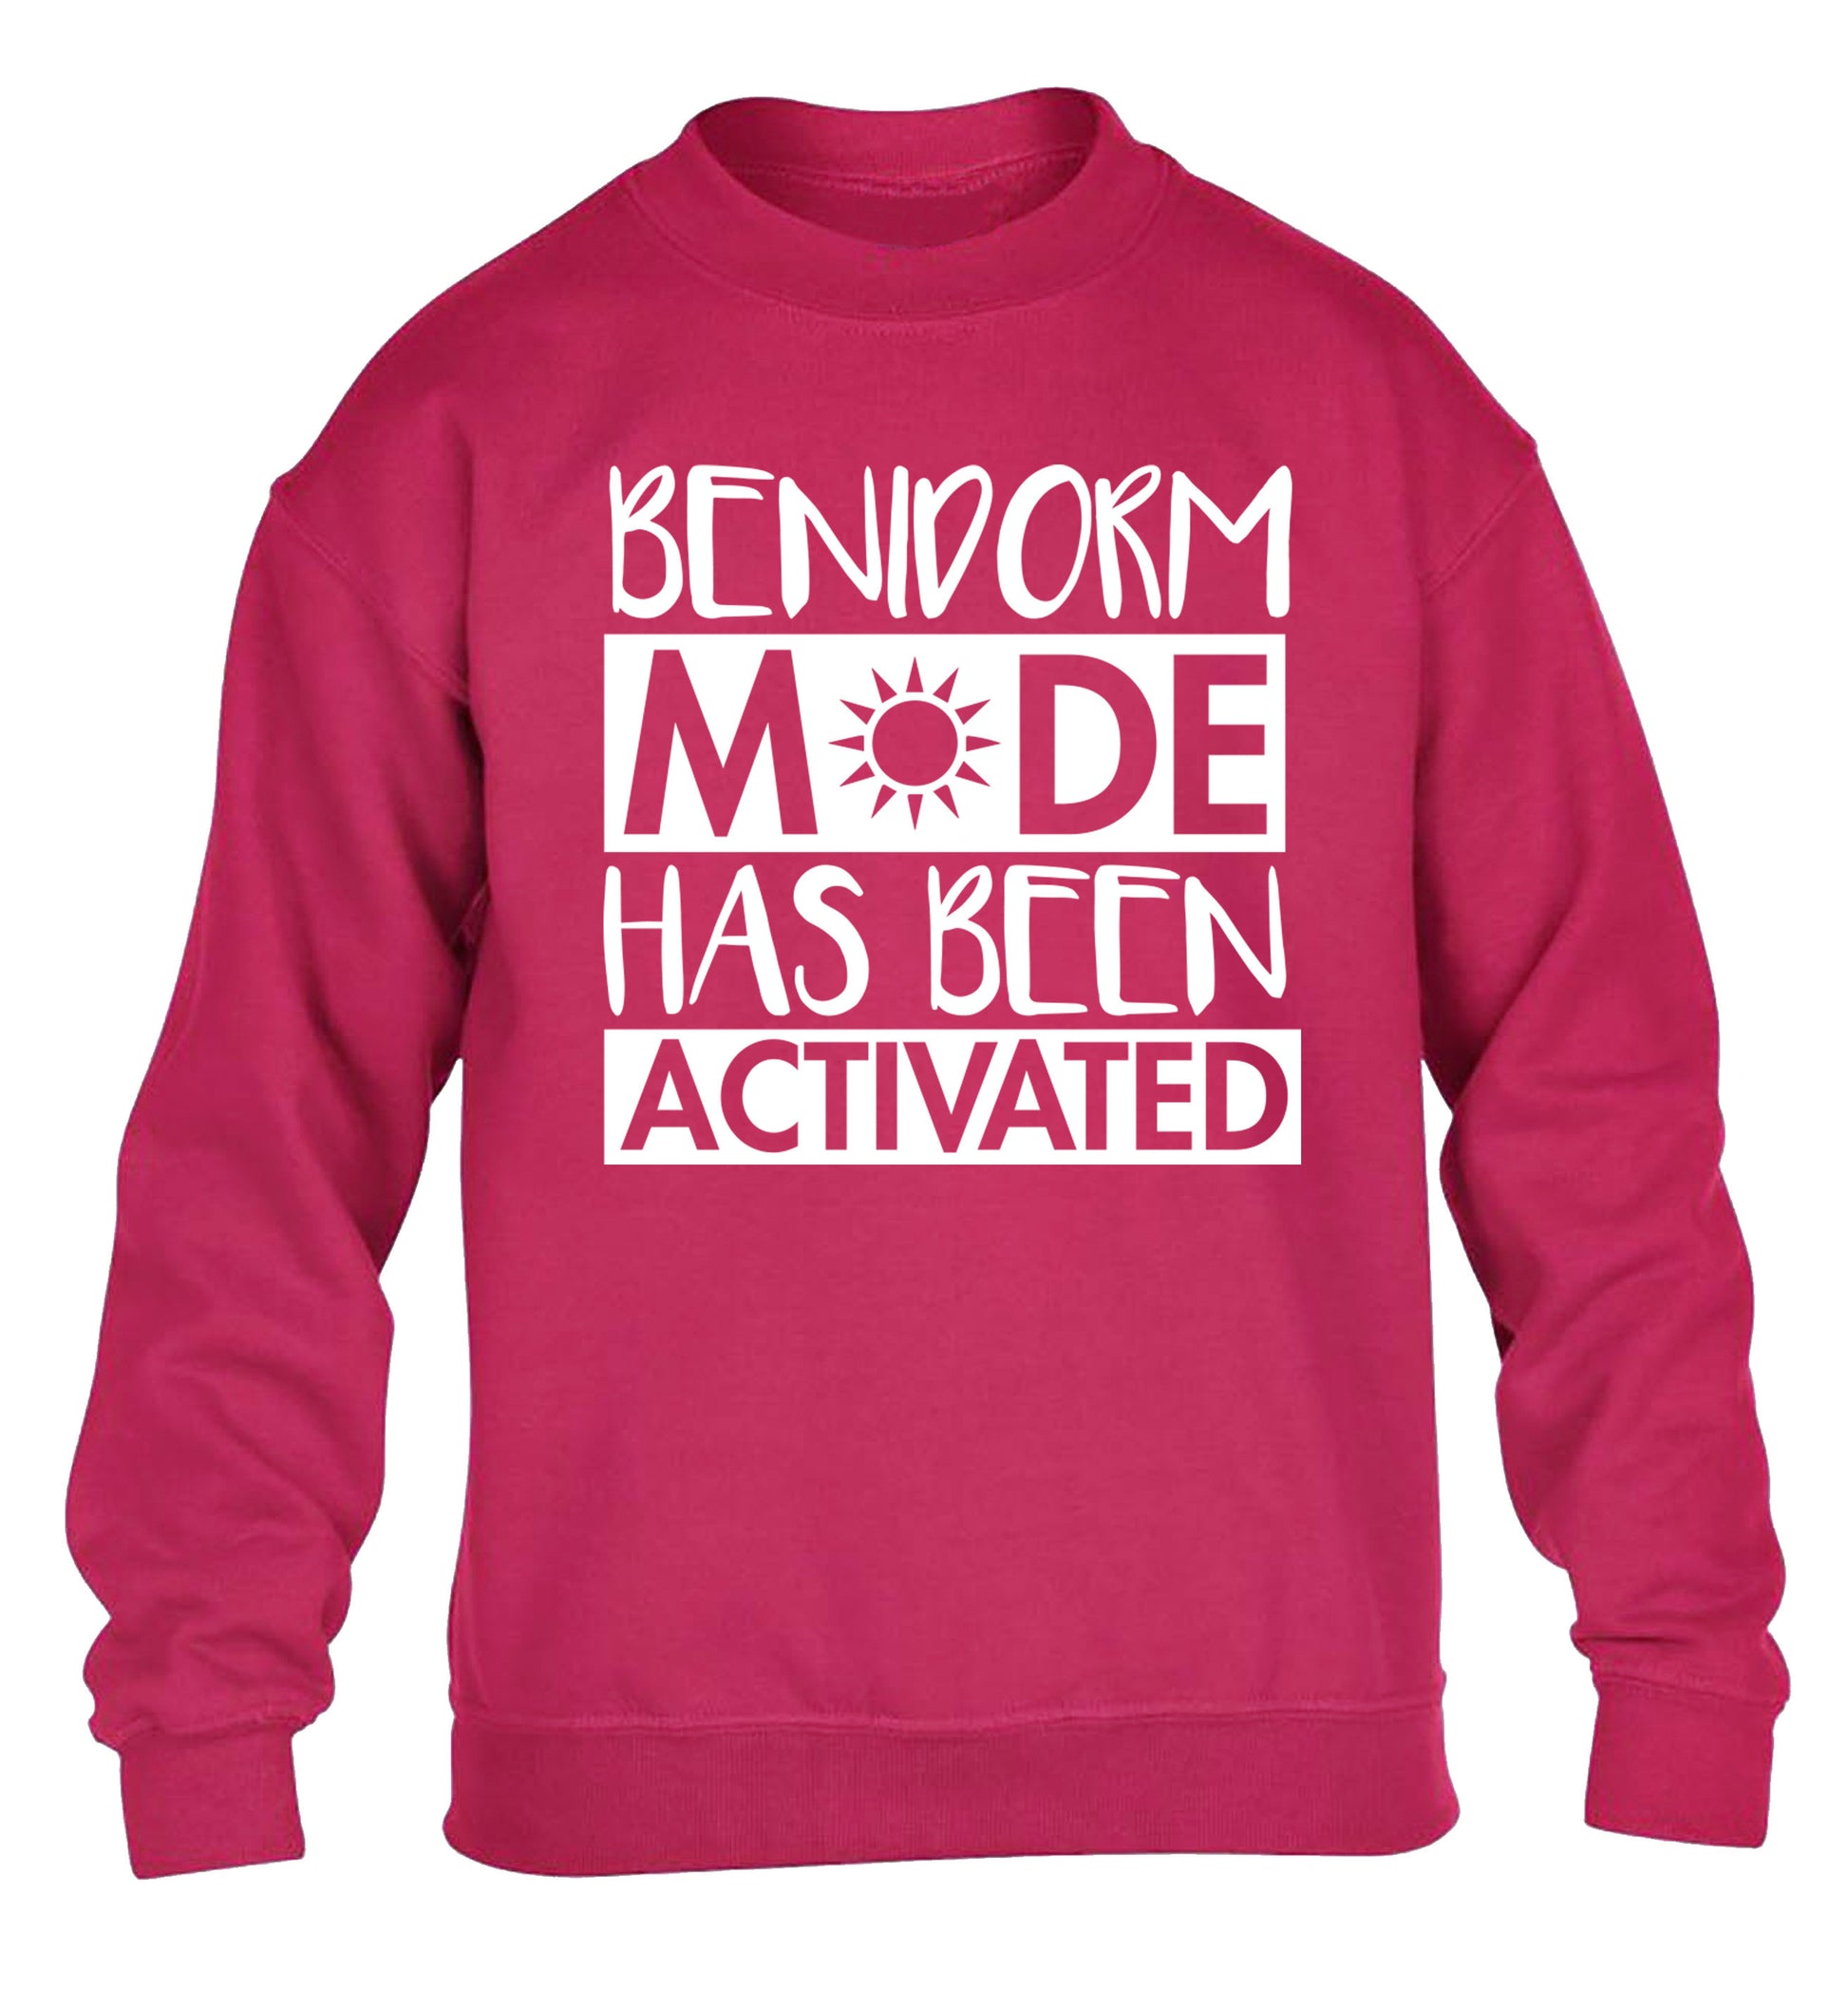 Benidorm mode has been activated children's pink sweater 12-14 Years